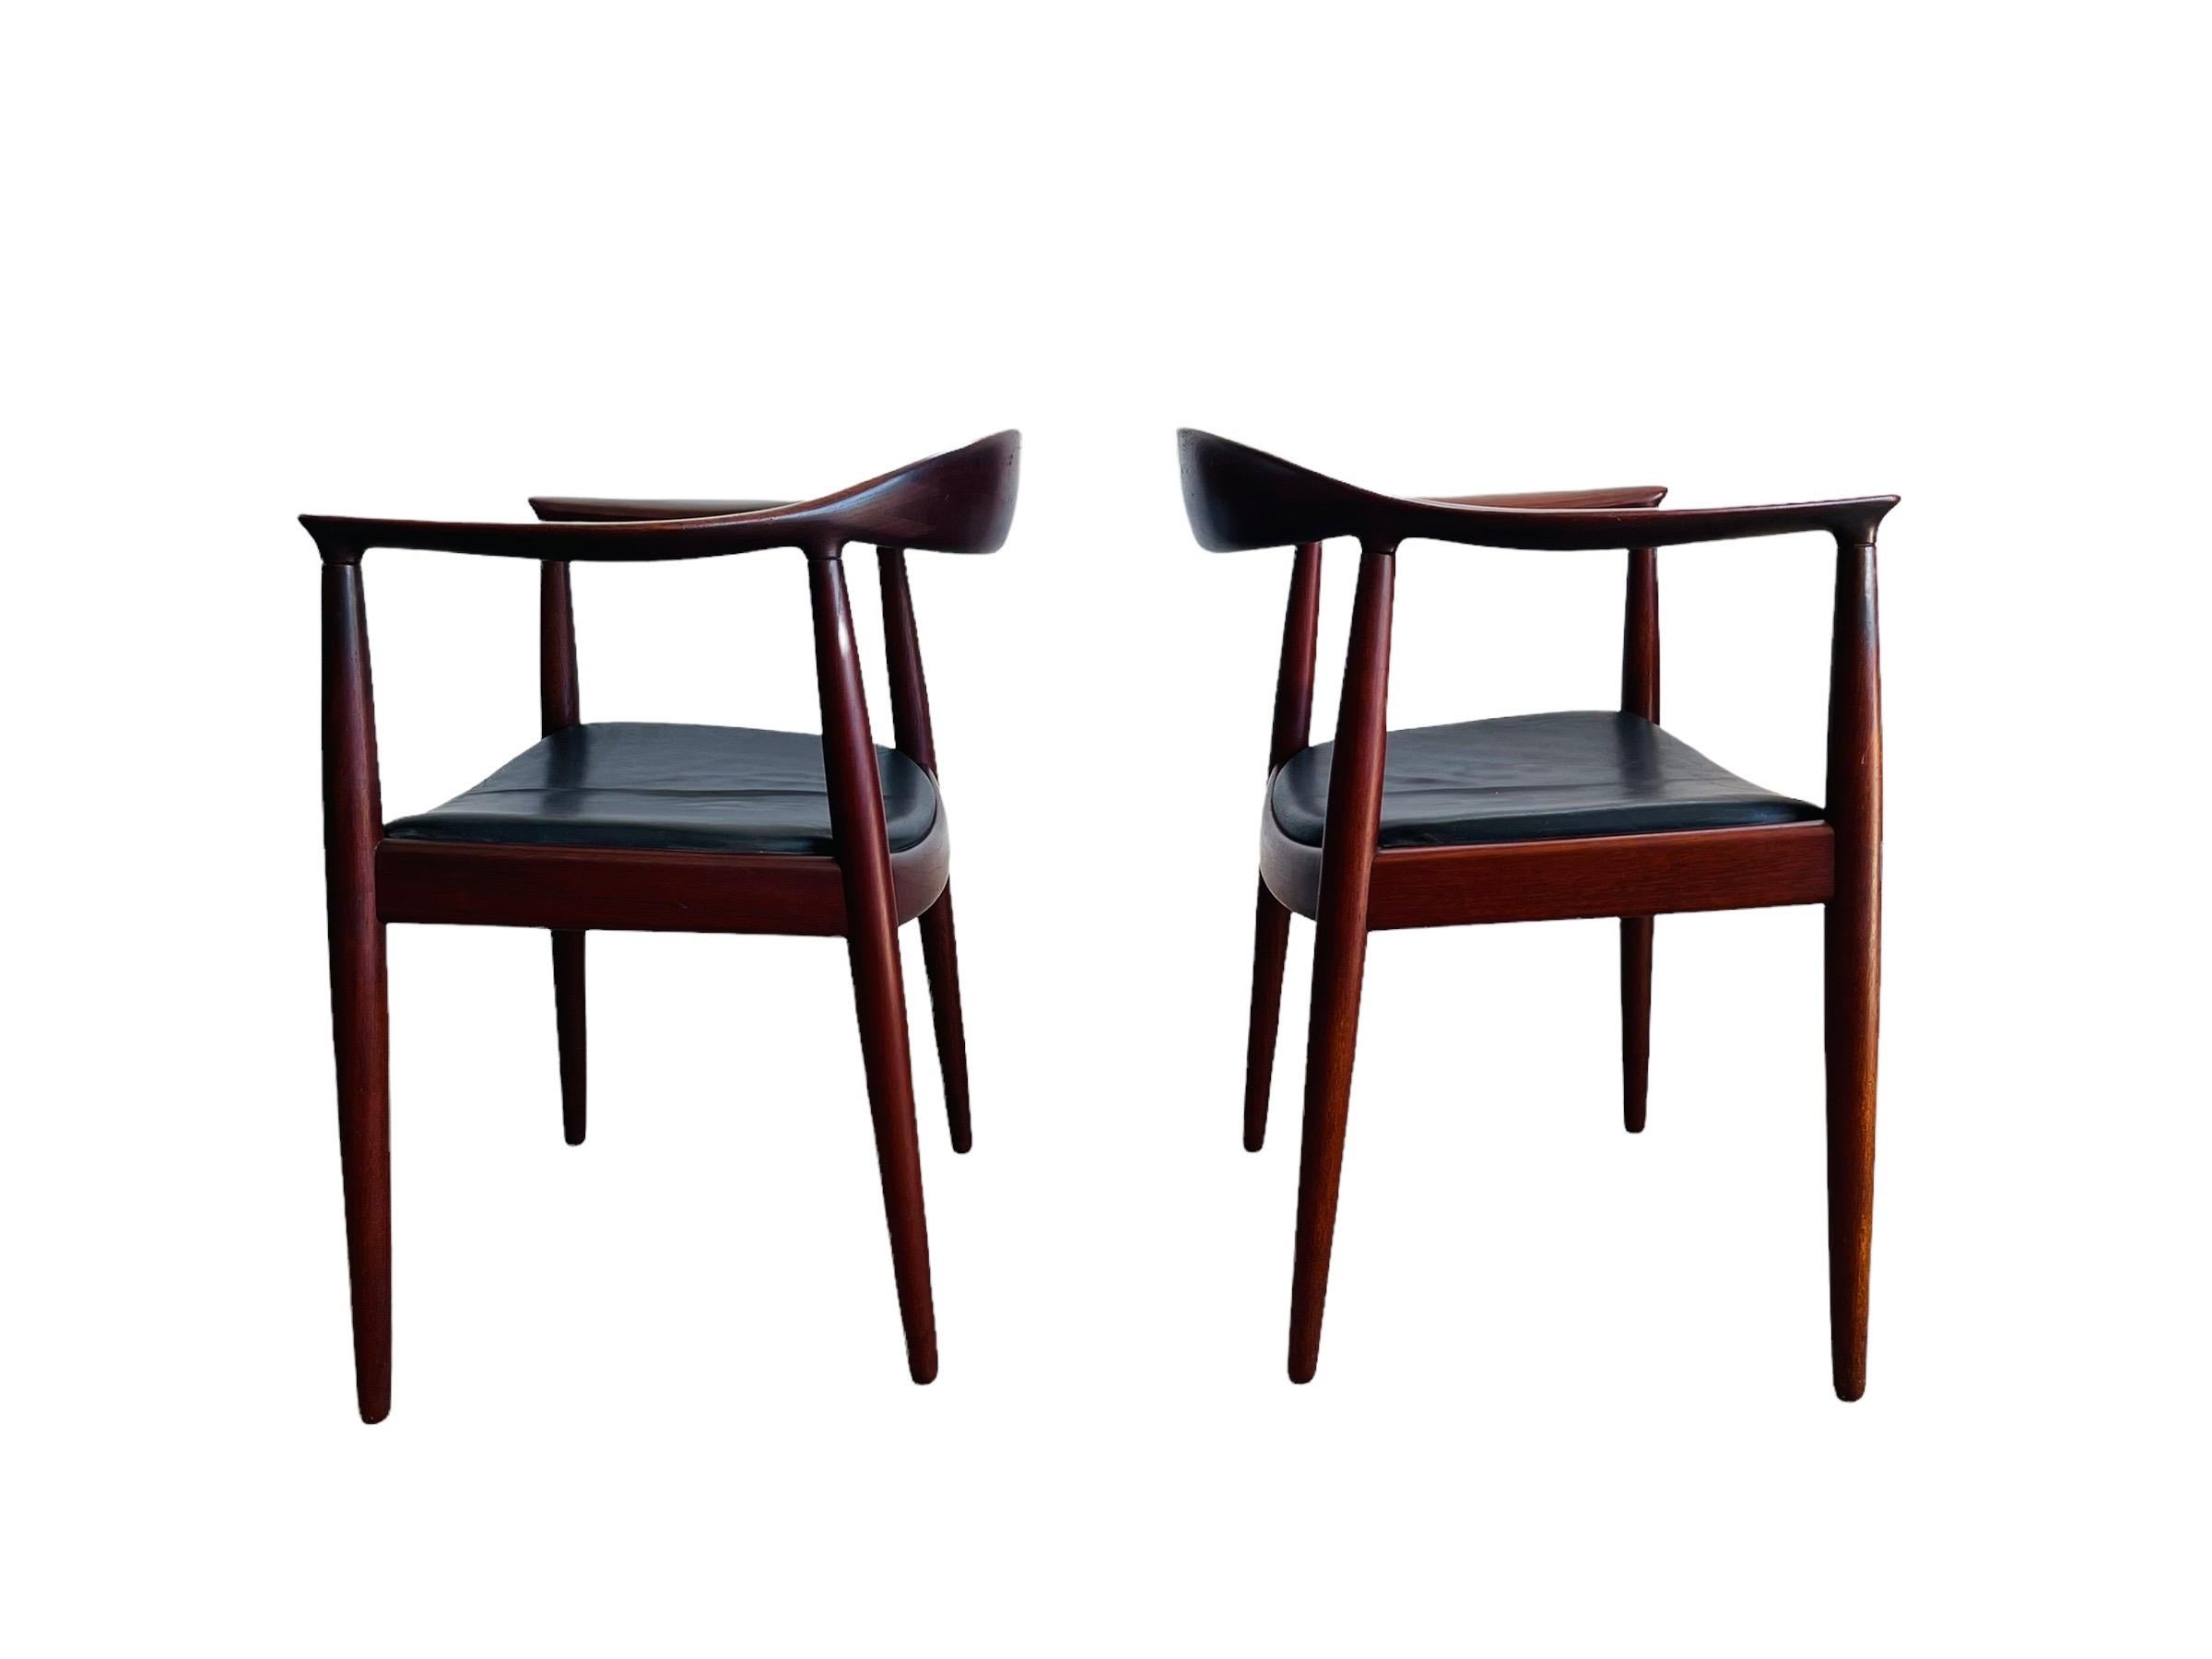 Paire de chaises danoises rares en teck, conçues par Hans J. Wegner pour Johannes Hansen vers 1954. Les chaises sont recouvertes de cuir noir d'origine sur un cadre en teck. la 